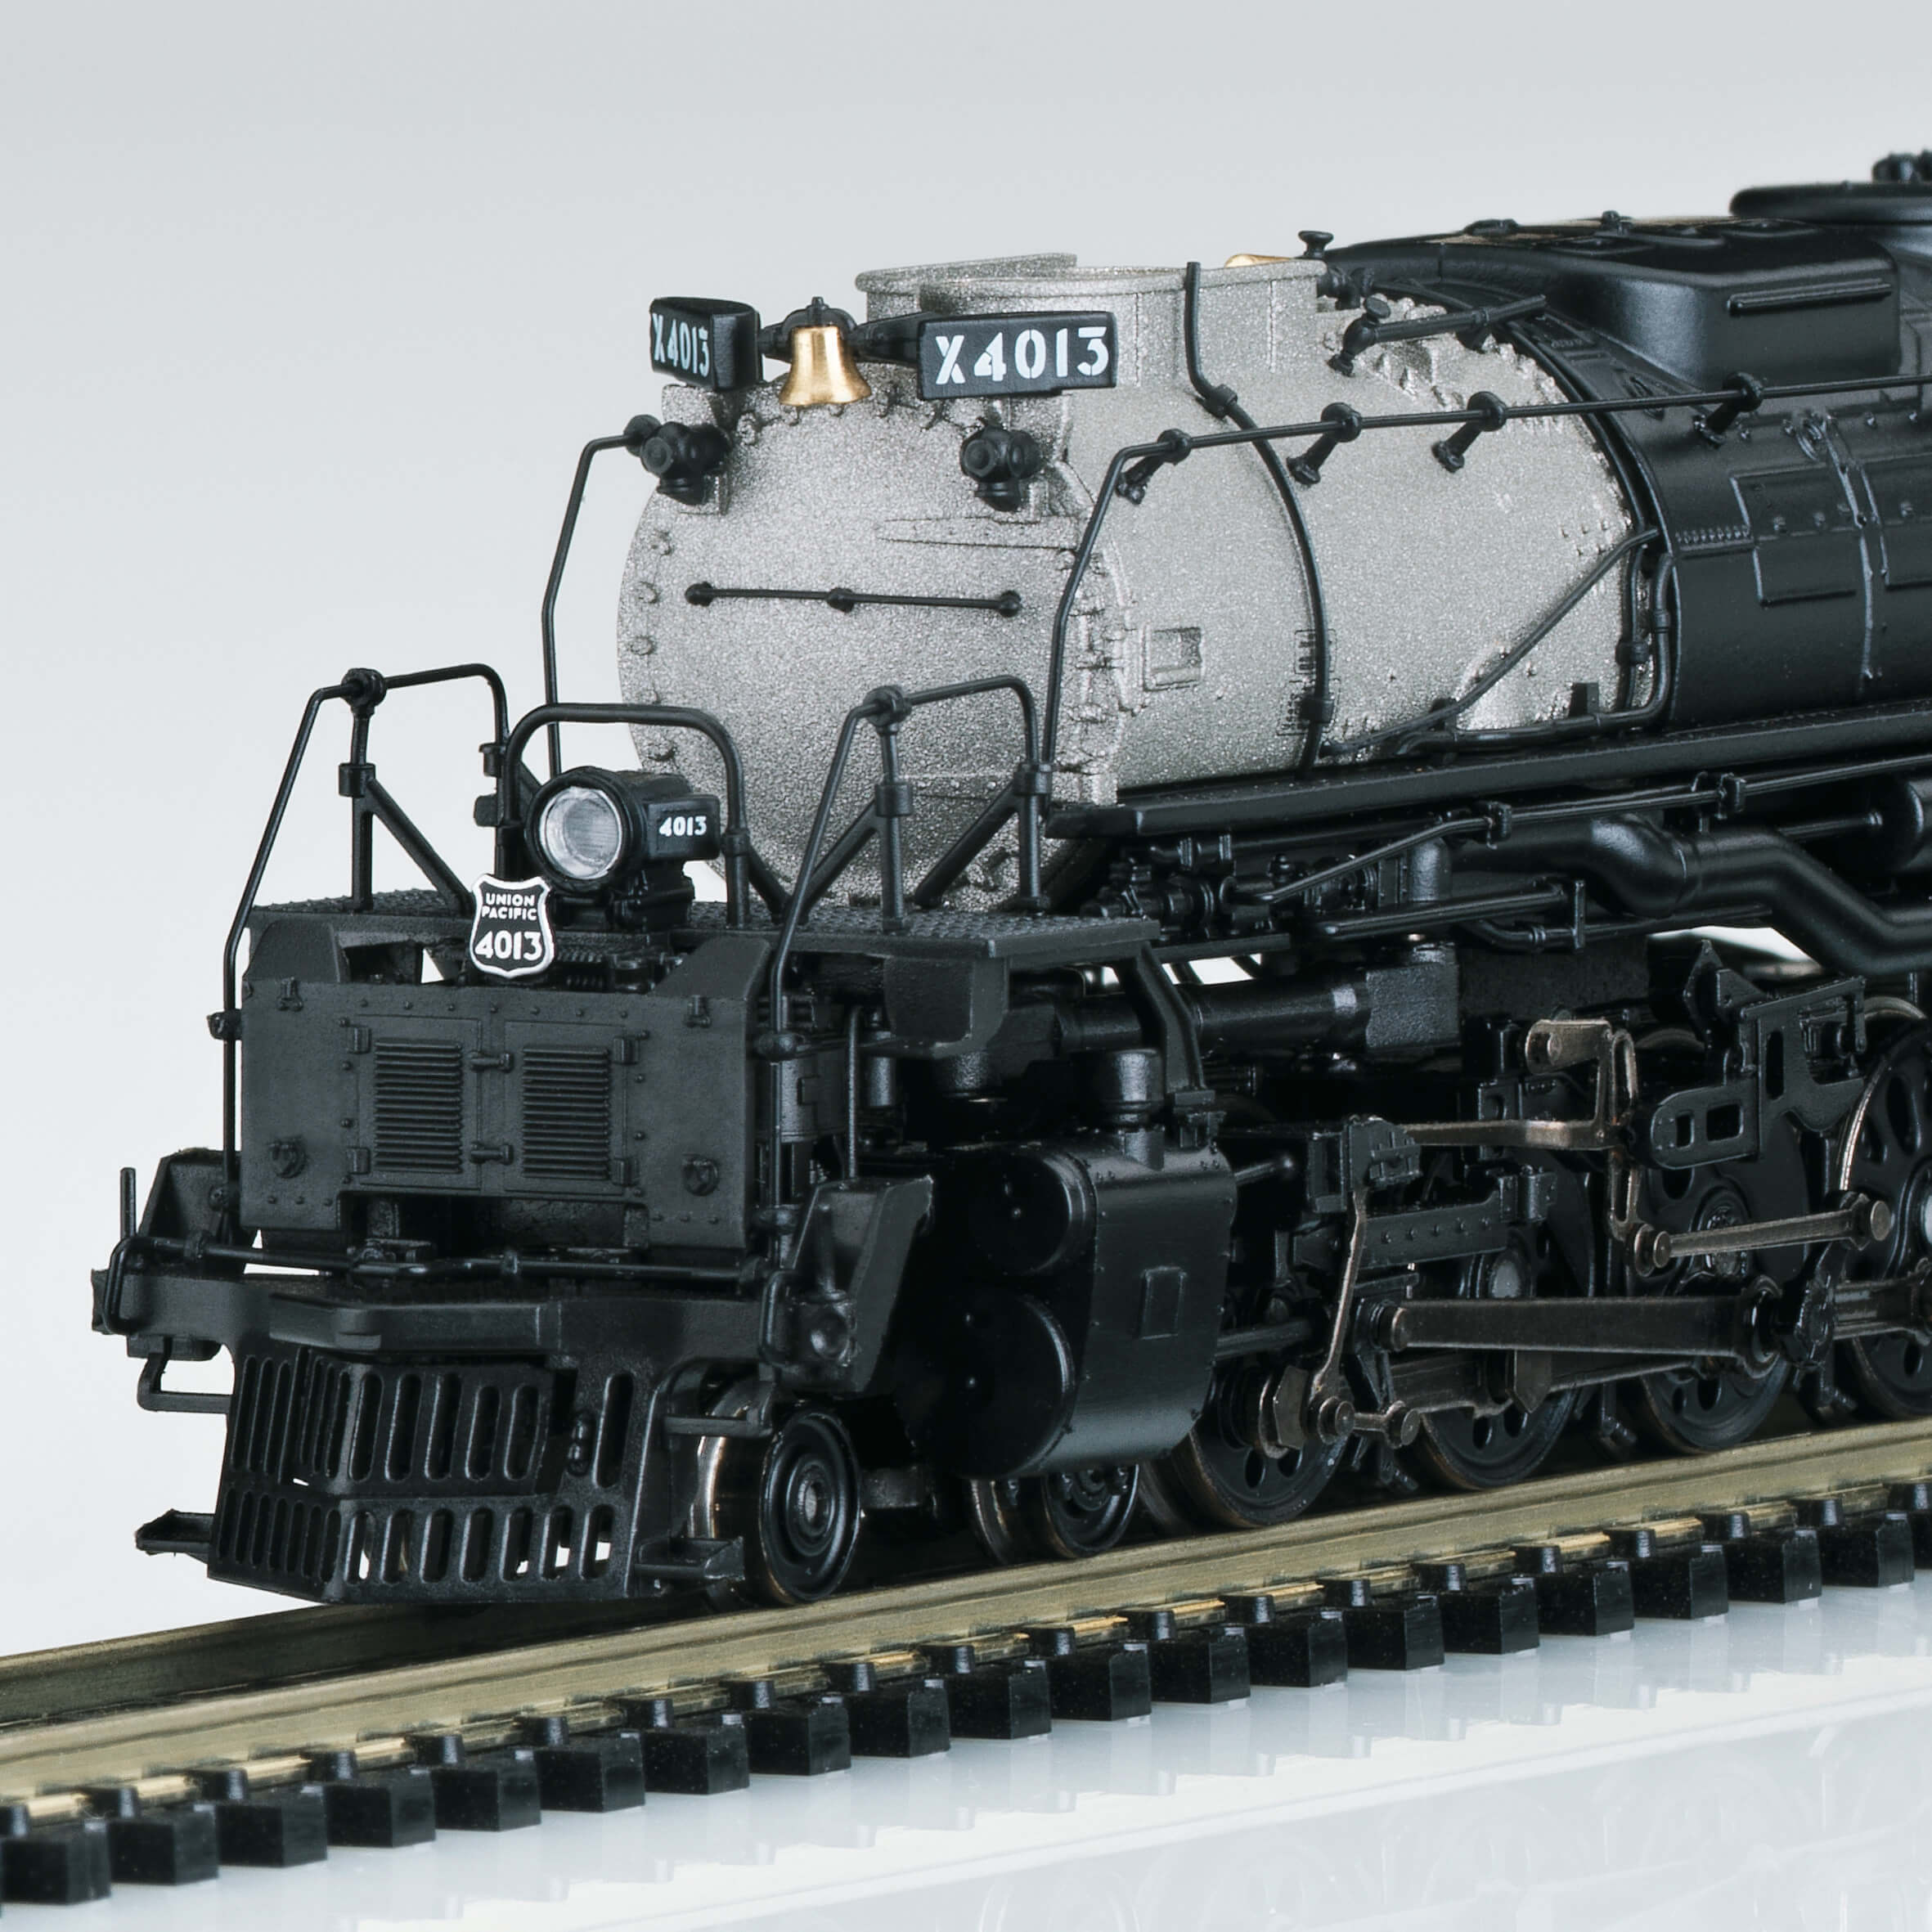 Series 4000 steam locomotive